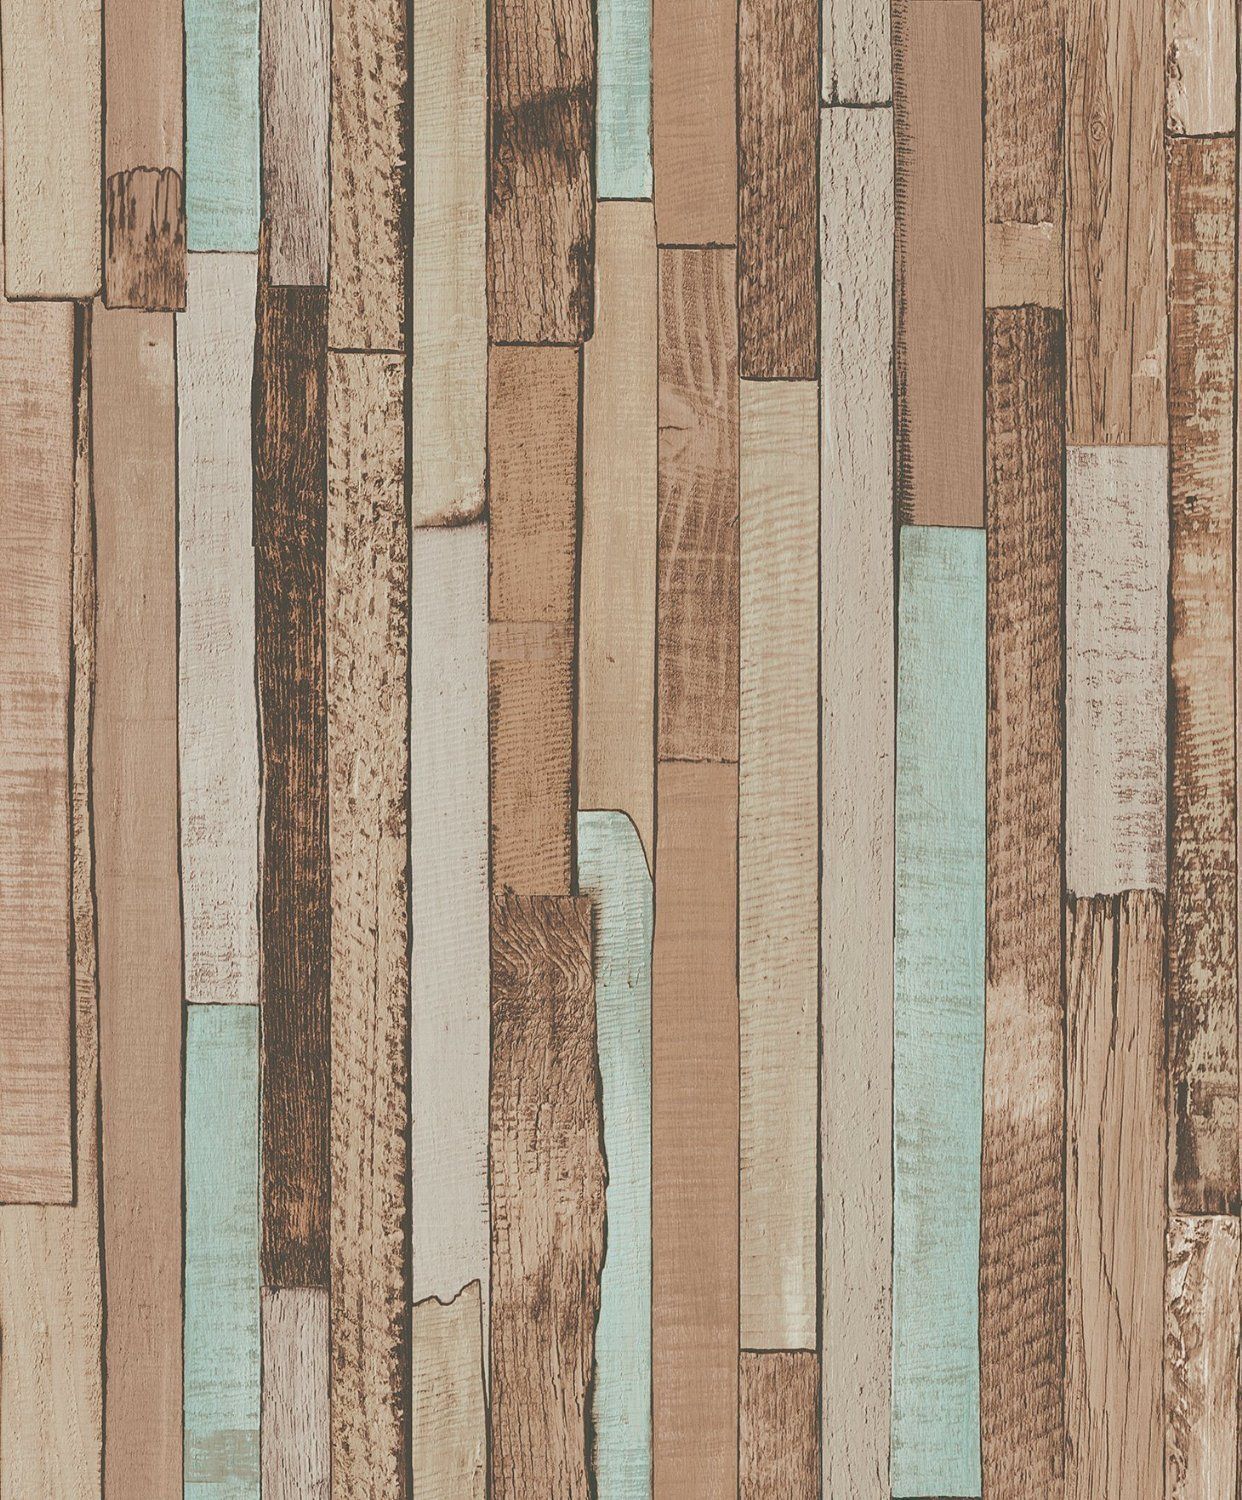 Blooming Wall - Papel pintado de madera de color vintage, 20.8 In32.8 Ft = 57 Sq